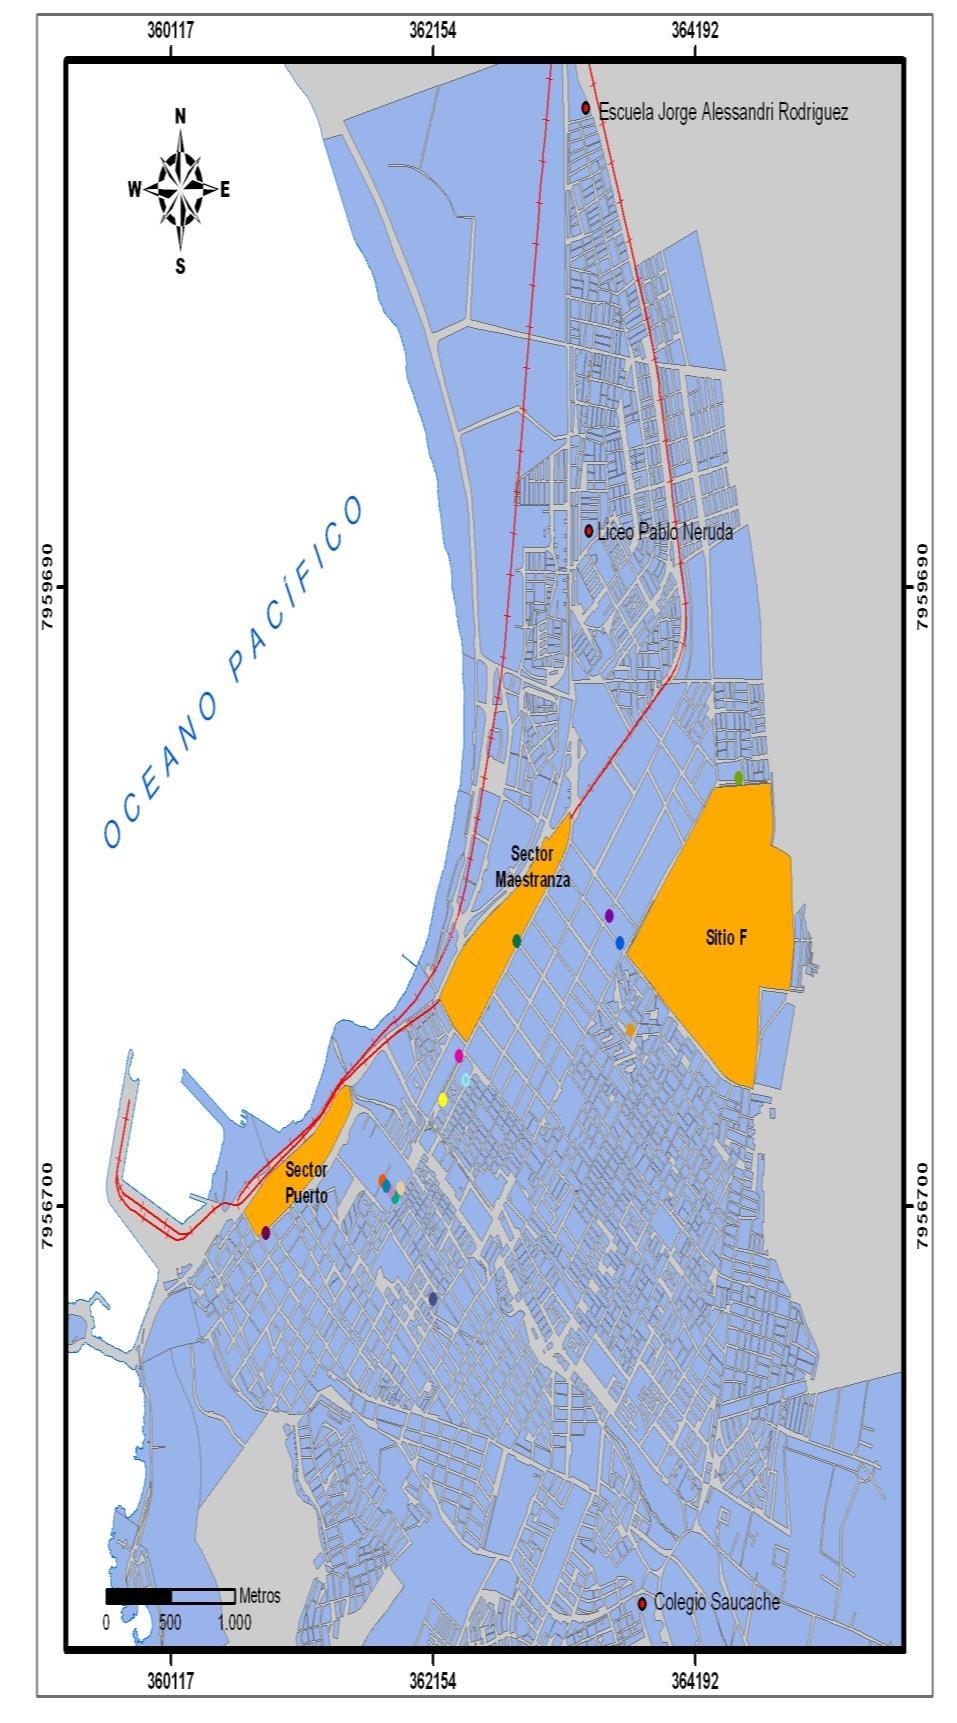 Polimetales de Arica Problemas de contaminación por pasivos mineros insertos en la ciudad desde 1984 hasta 2009.